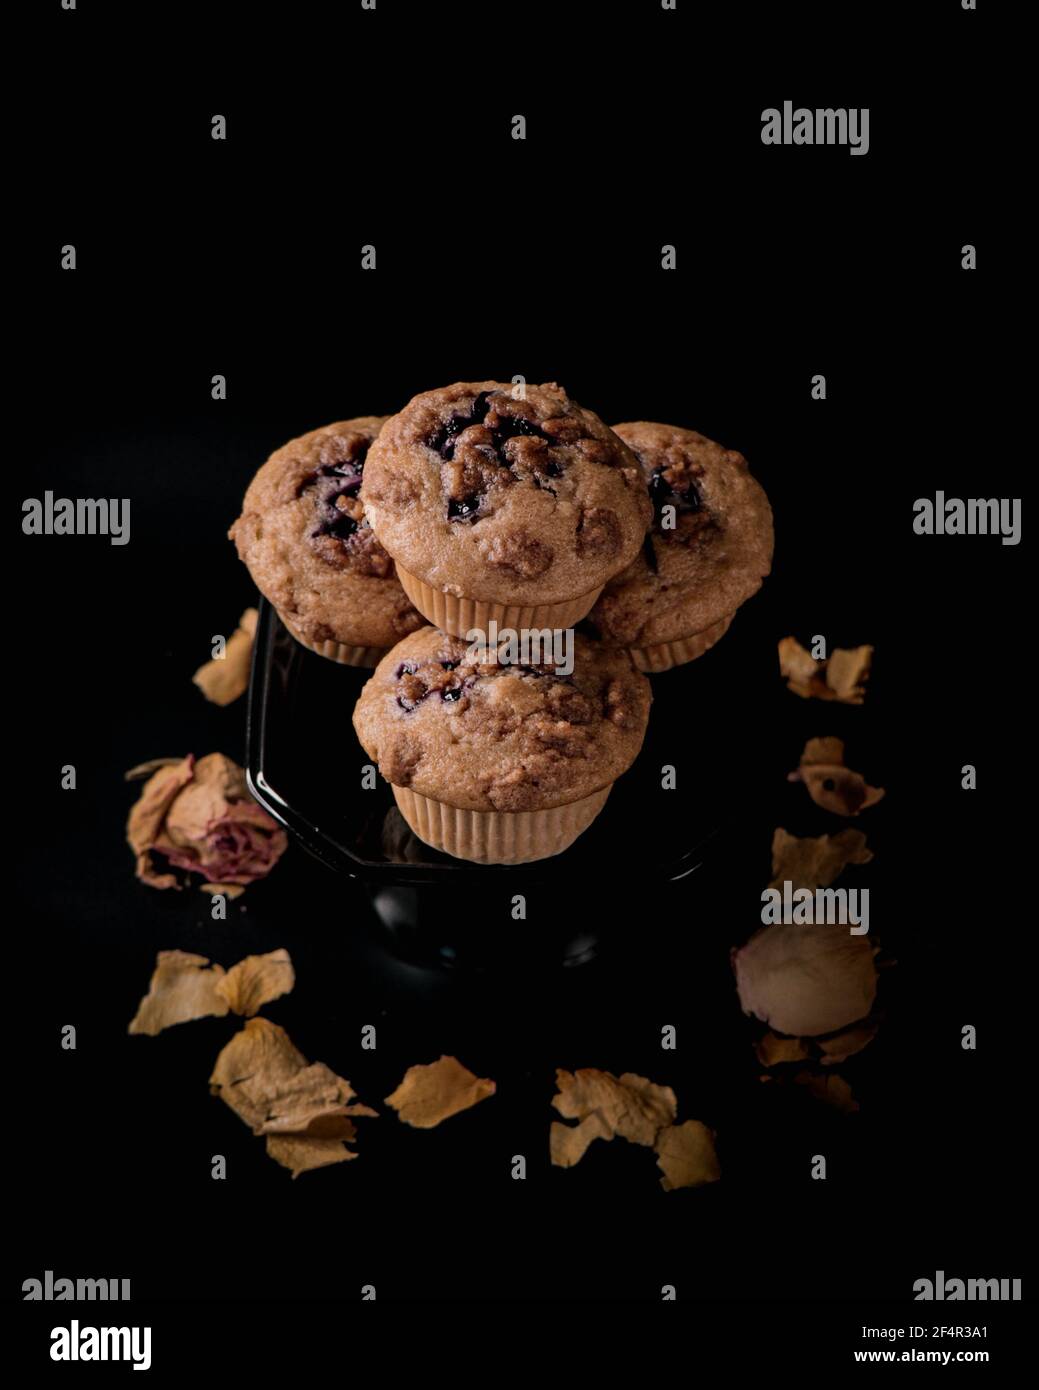 Muffins en streusel aux myrtilles et à la cannelle sur une plaque et un fond noirs, avec cadre central, photographie alimentaire haute résolution Banque D'Images